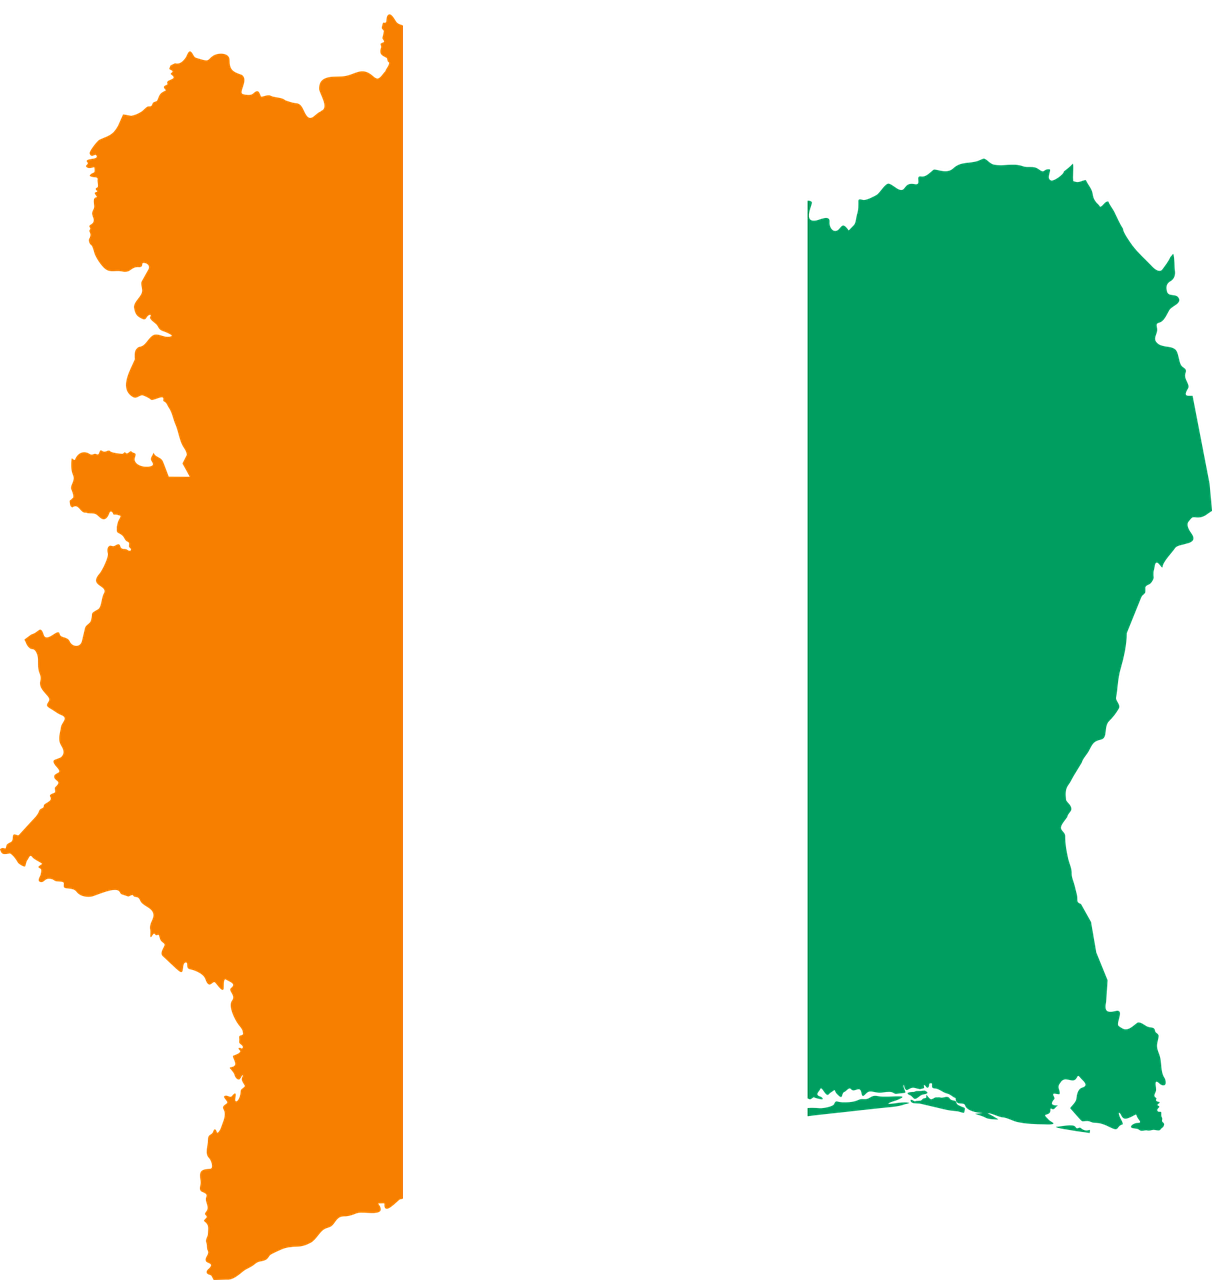 Ambassade de France en Côte d'Ivoire : formulaire de demande de visa : Les informations pour remplir correctement le formulaire de demande de visa à l'ambassade de France en Côte d'Ivoire